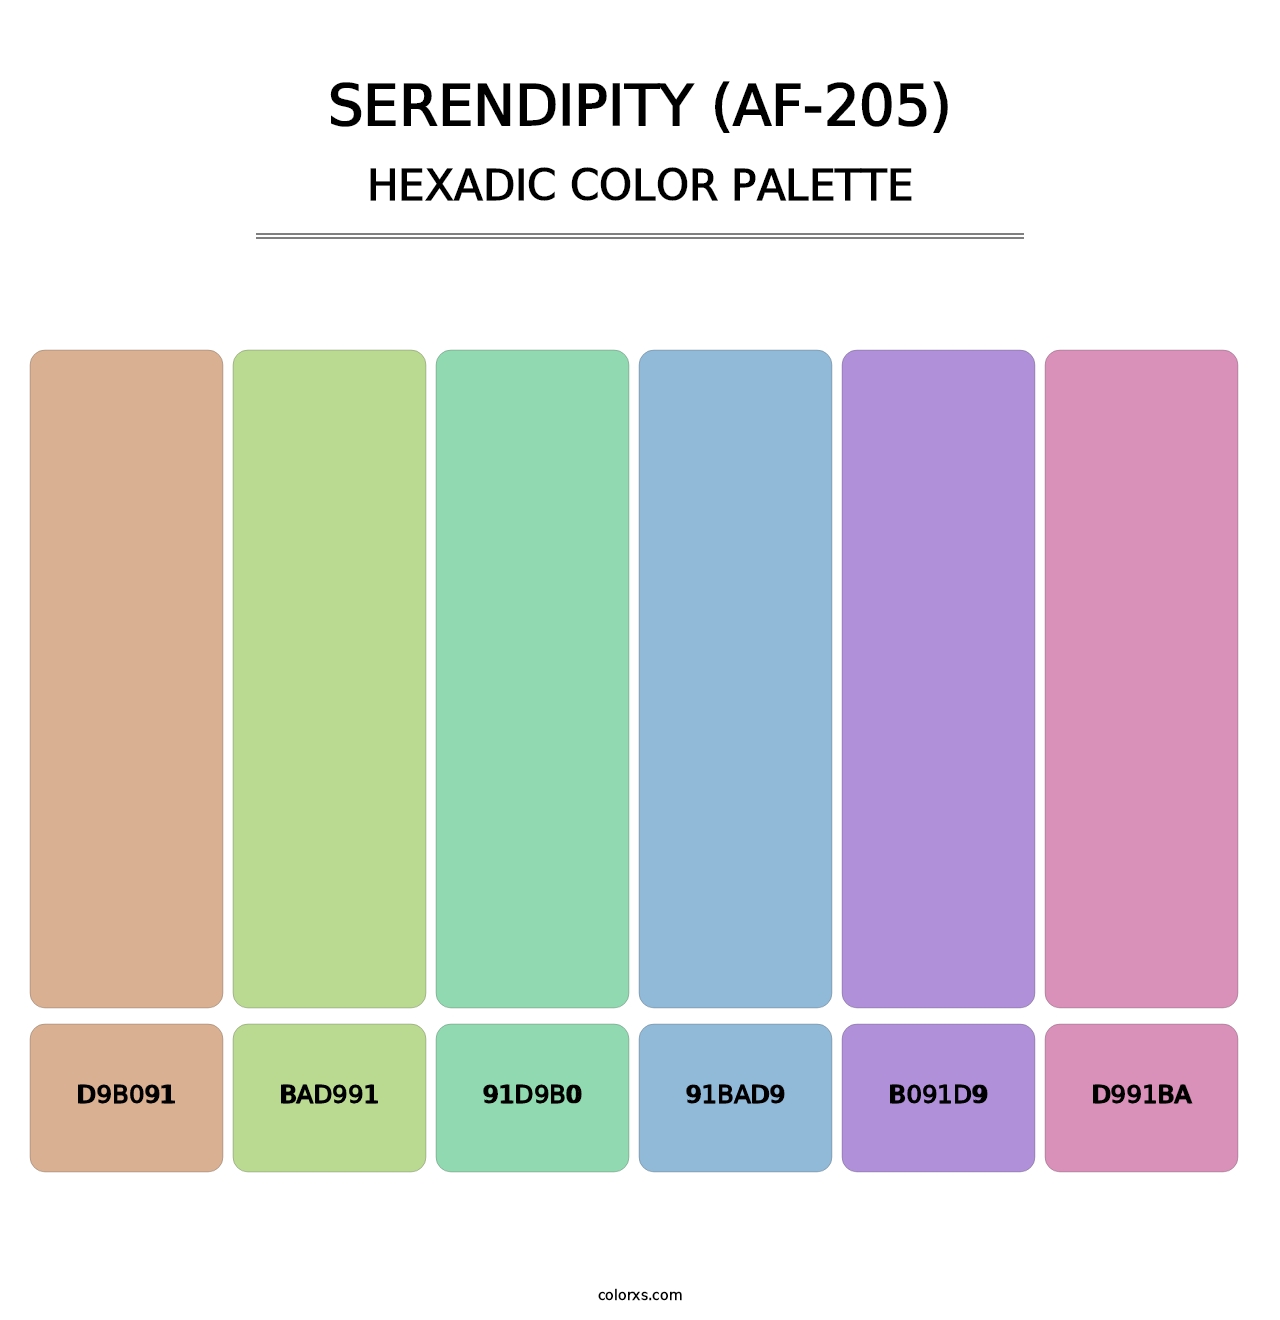 Serendipity (AF-205) - Hexadic Color Palette